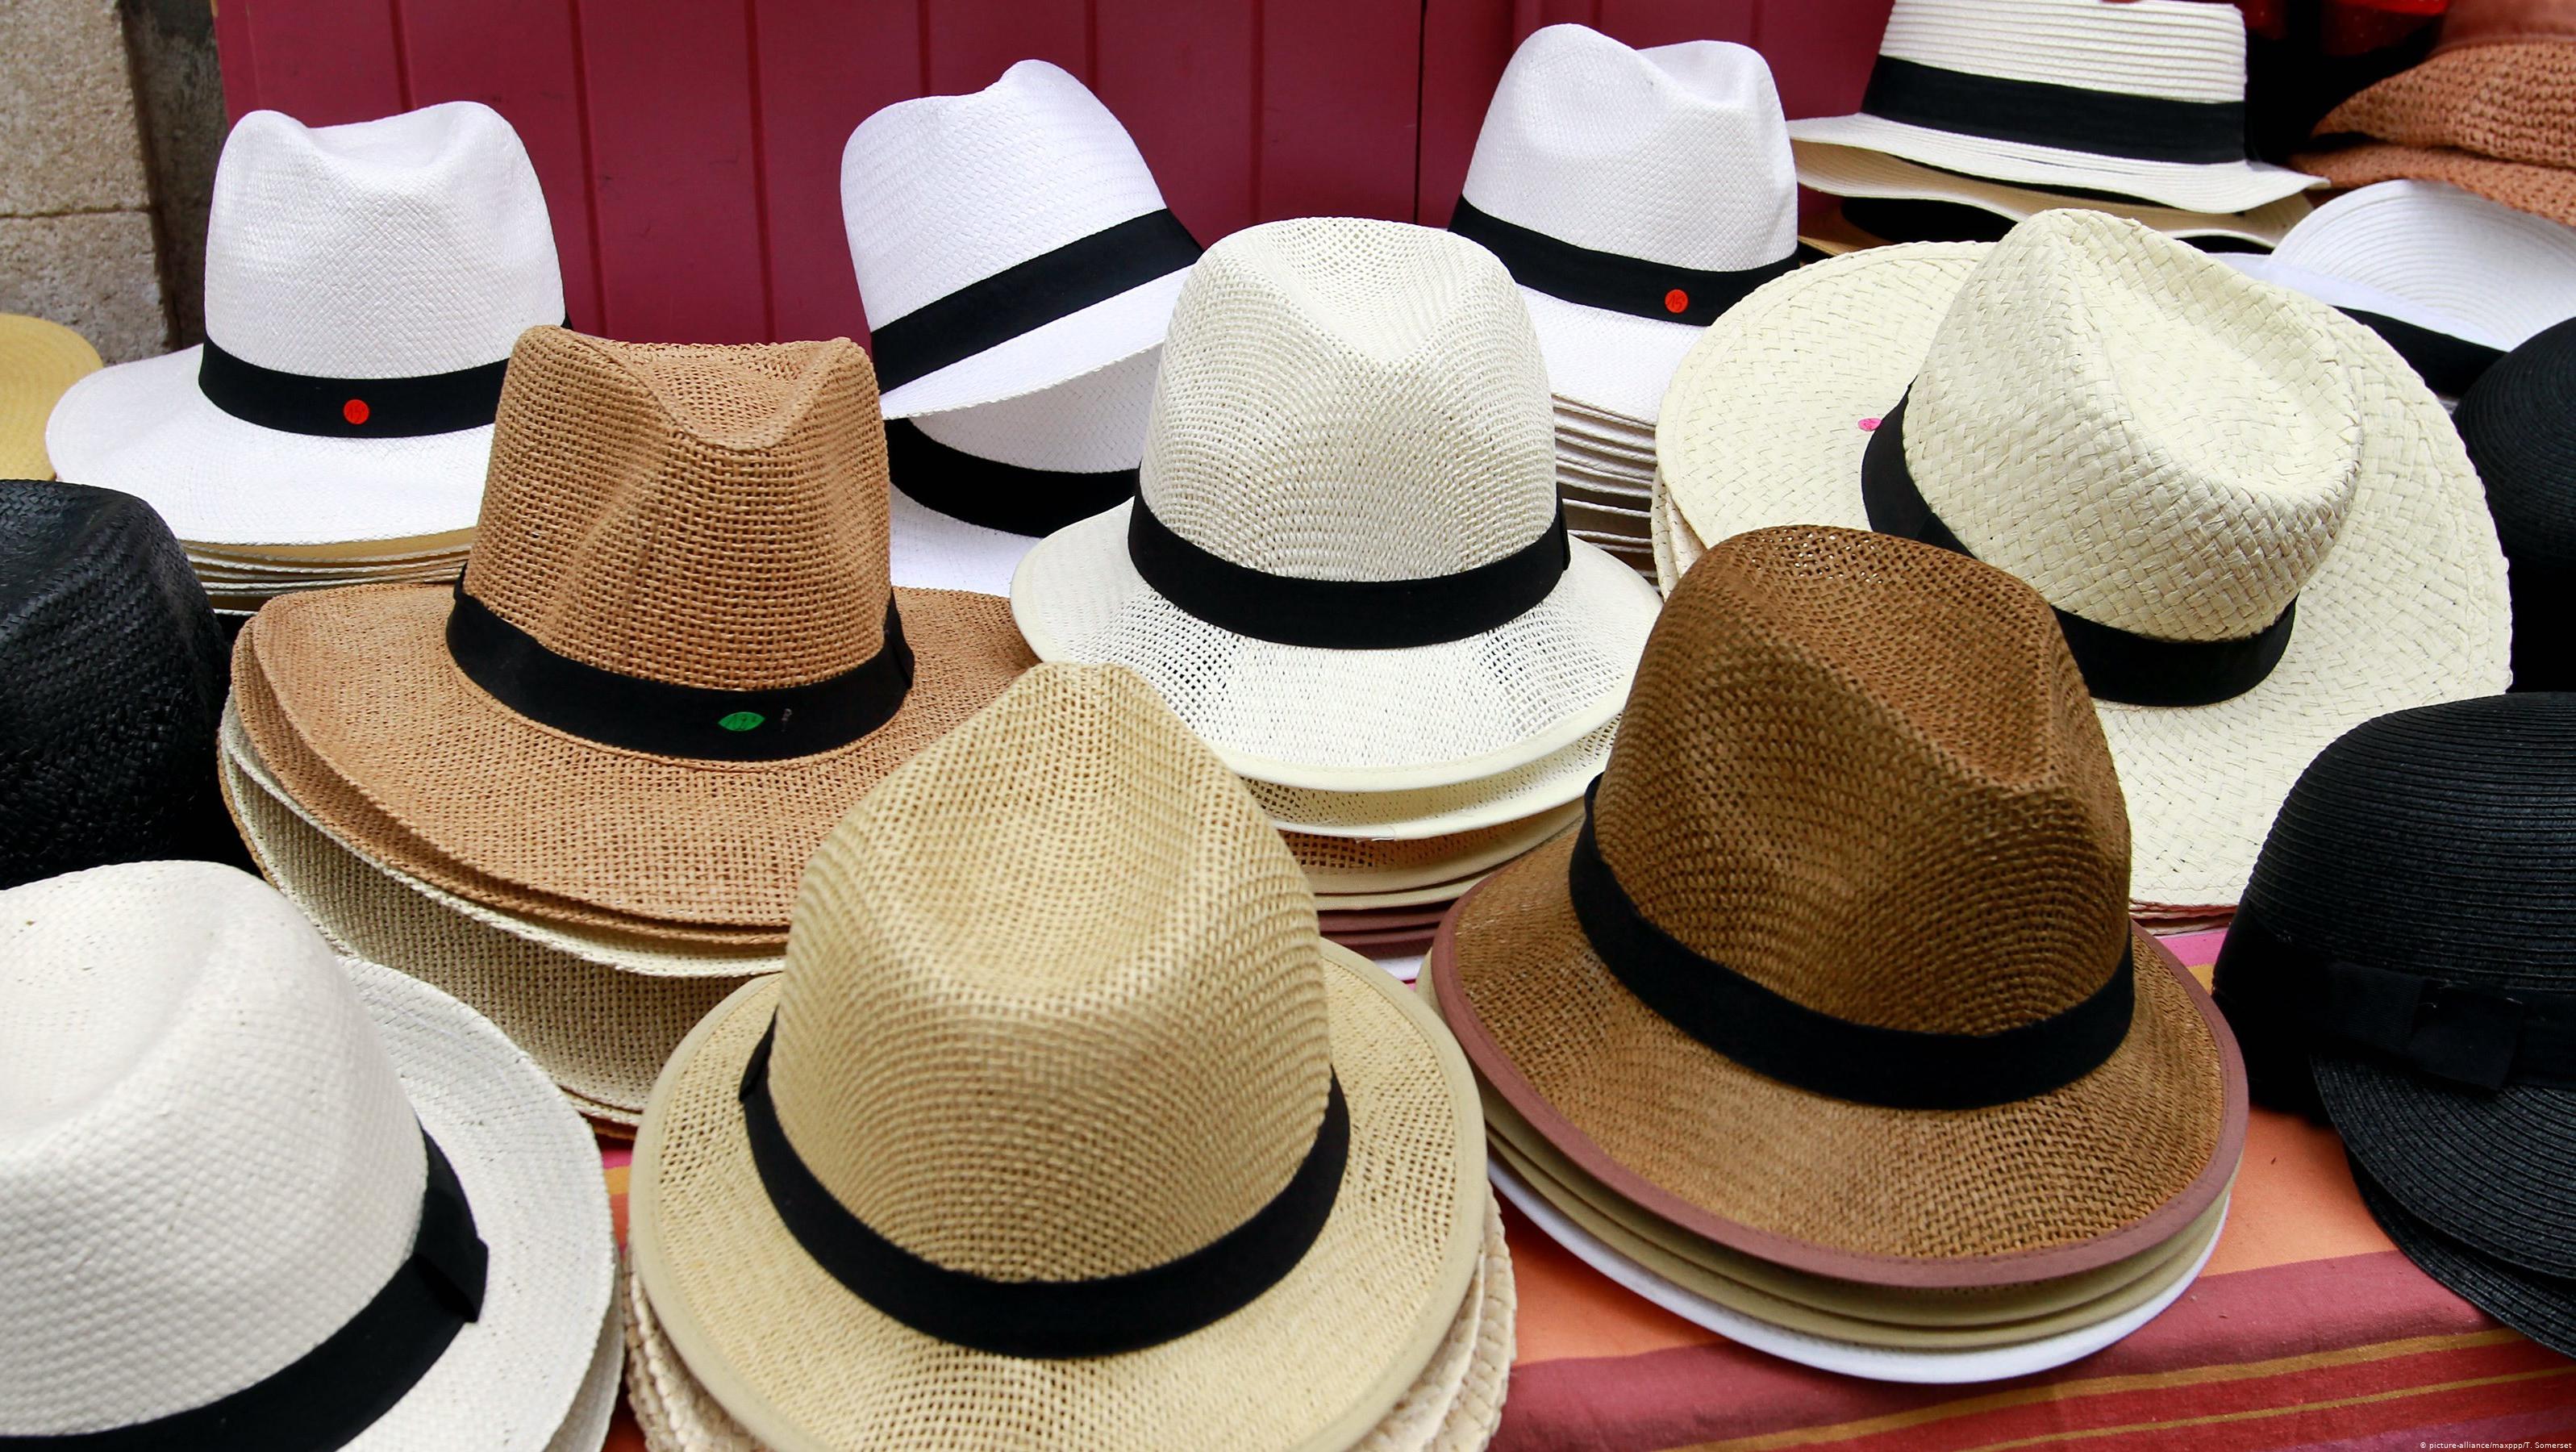 Название панам. Шляпа Панама эквадорская. Панама Hermes. Панама головной убор Эквадор. Шляпа плетеная "Панама".